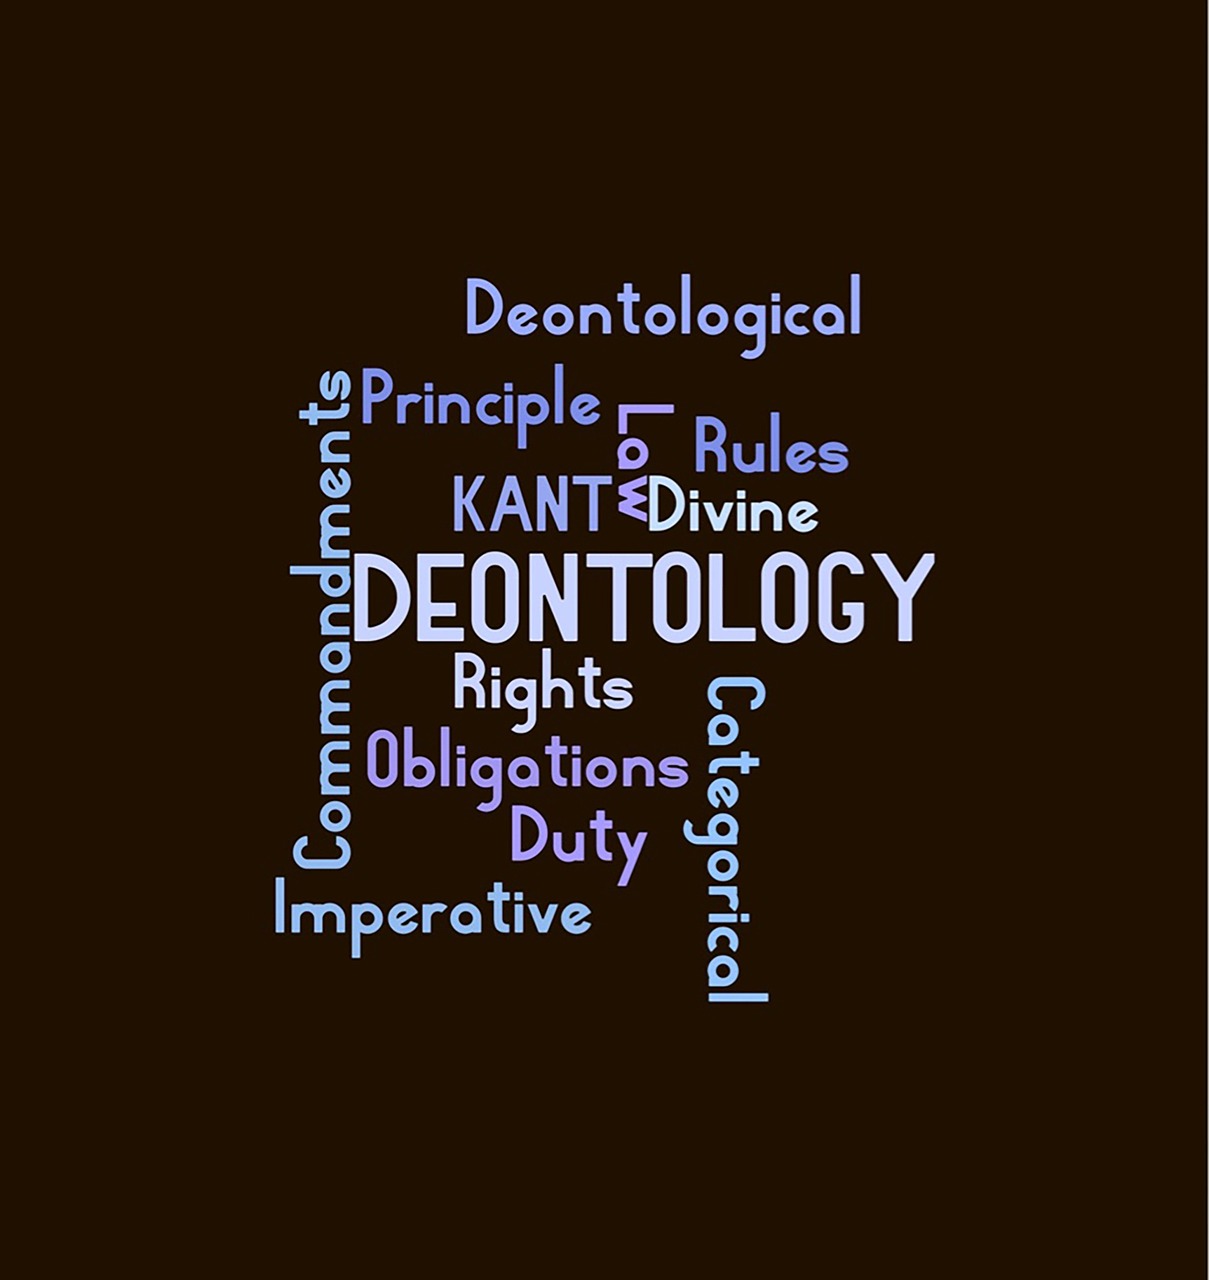 ethics wordcloud deontology free photo